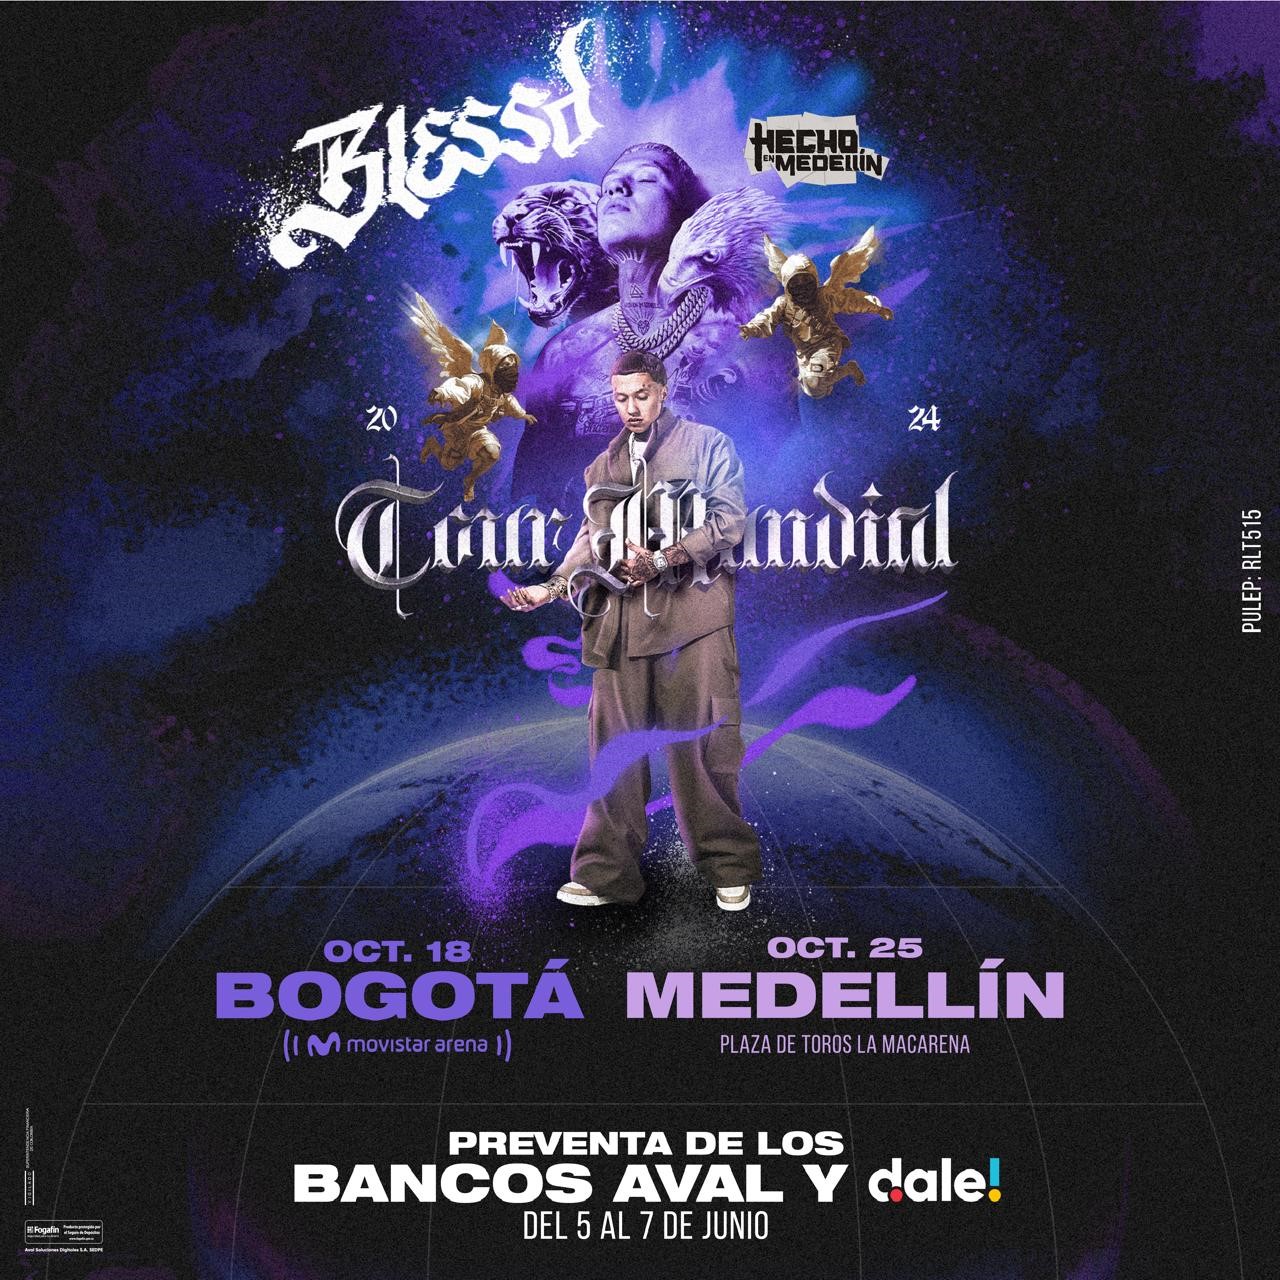 BLESSD llegará a Bogotá y Medellín con la gira más importante de su carrera